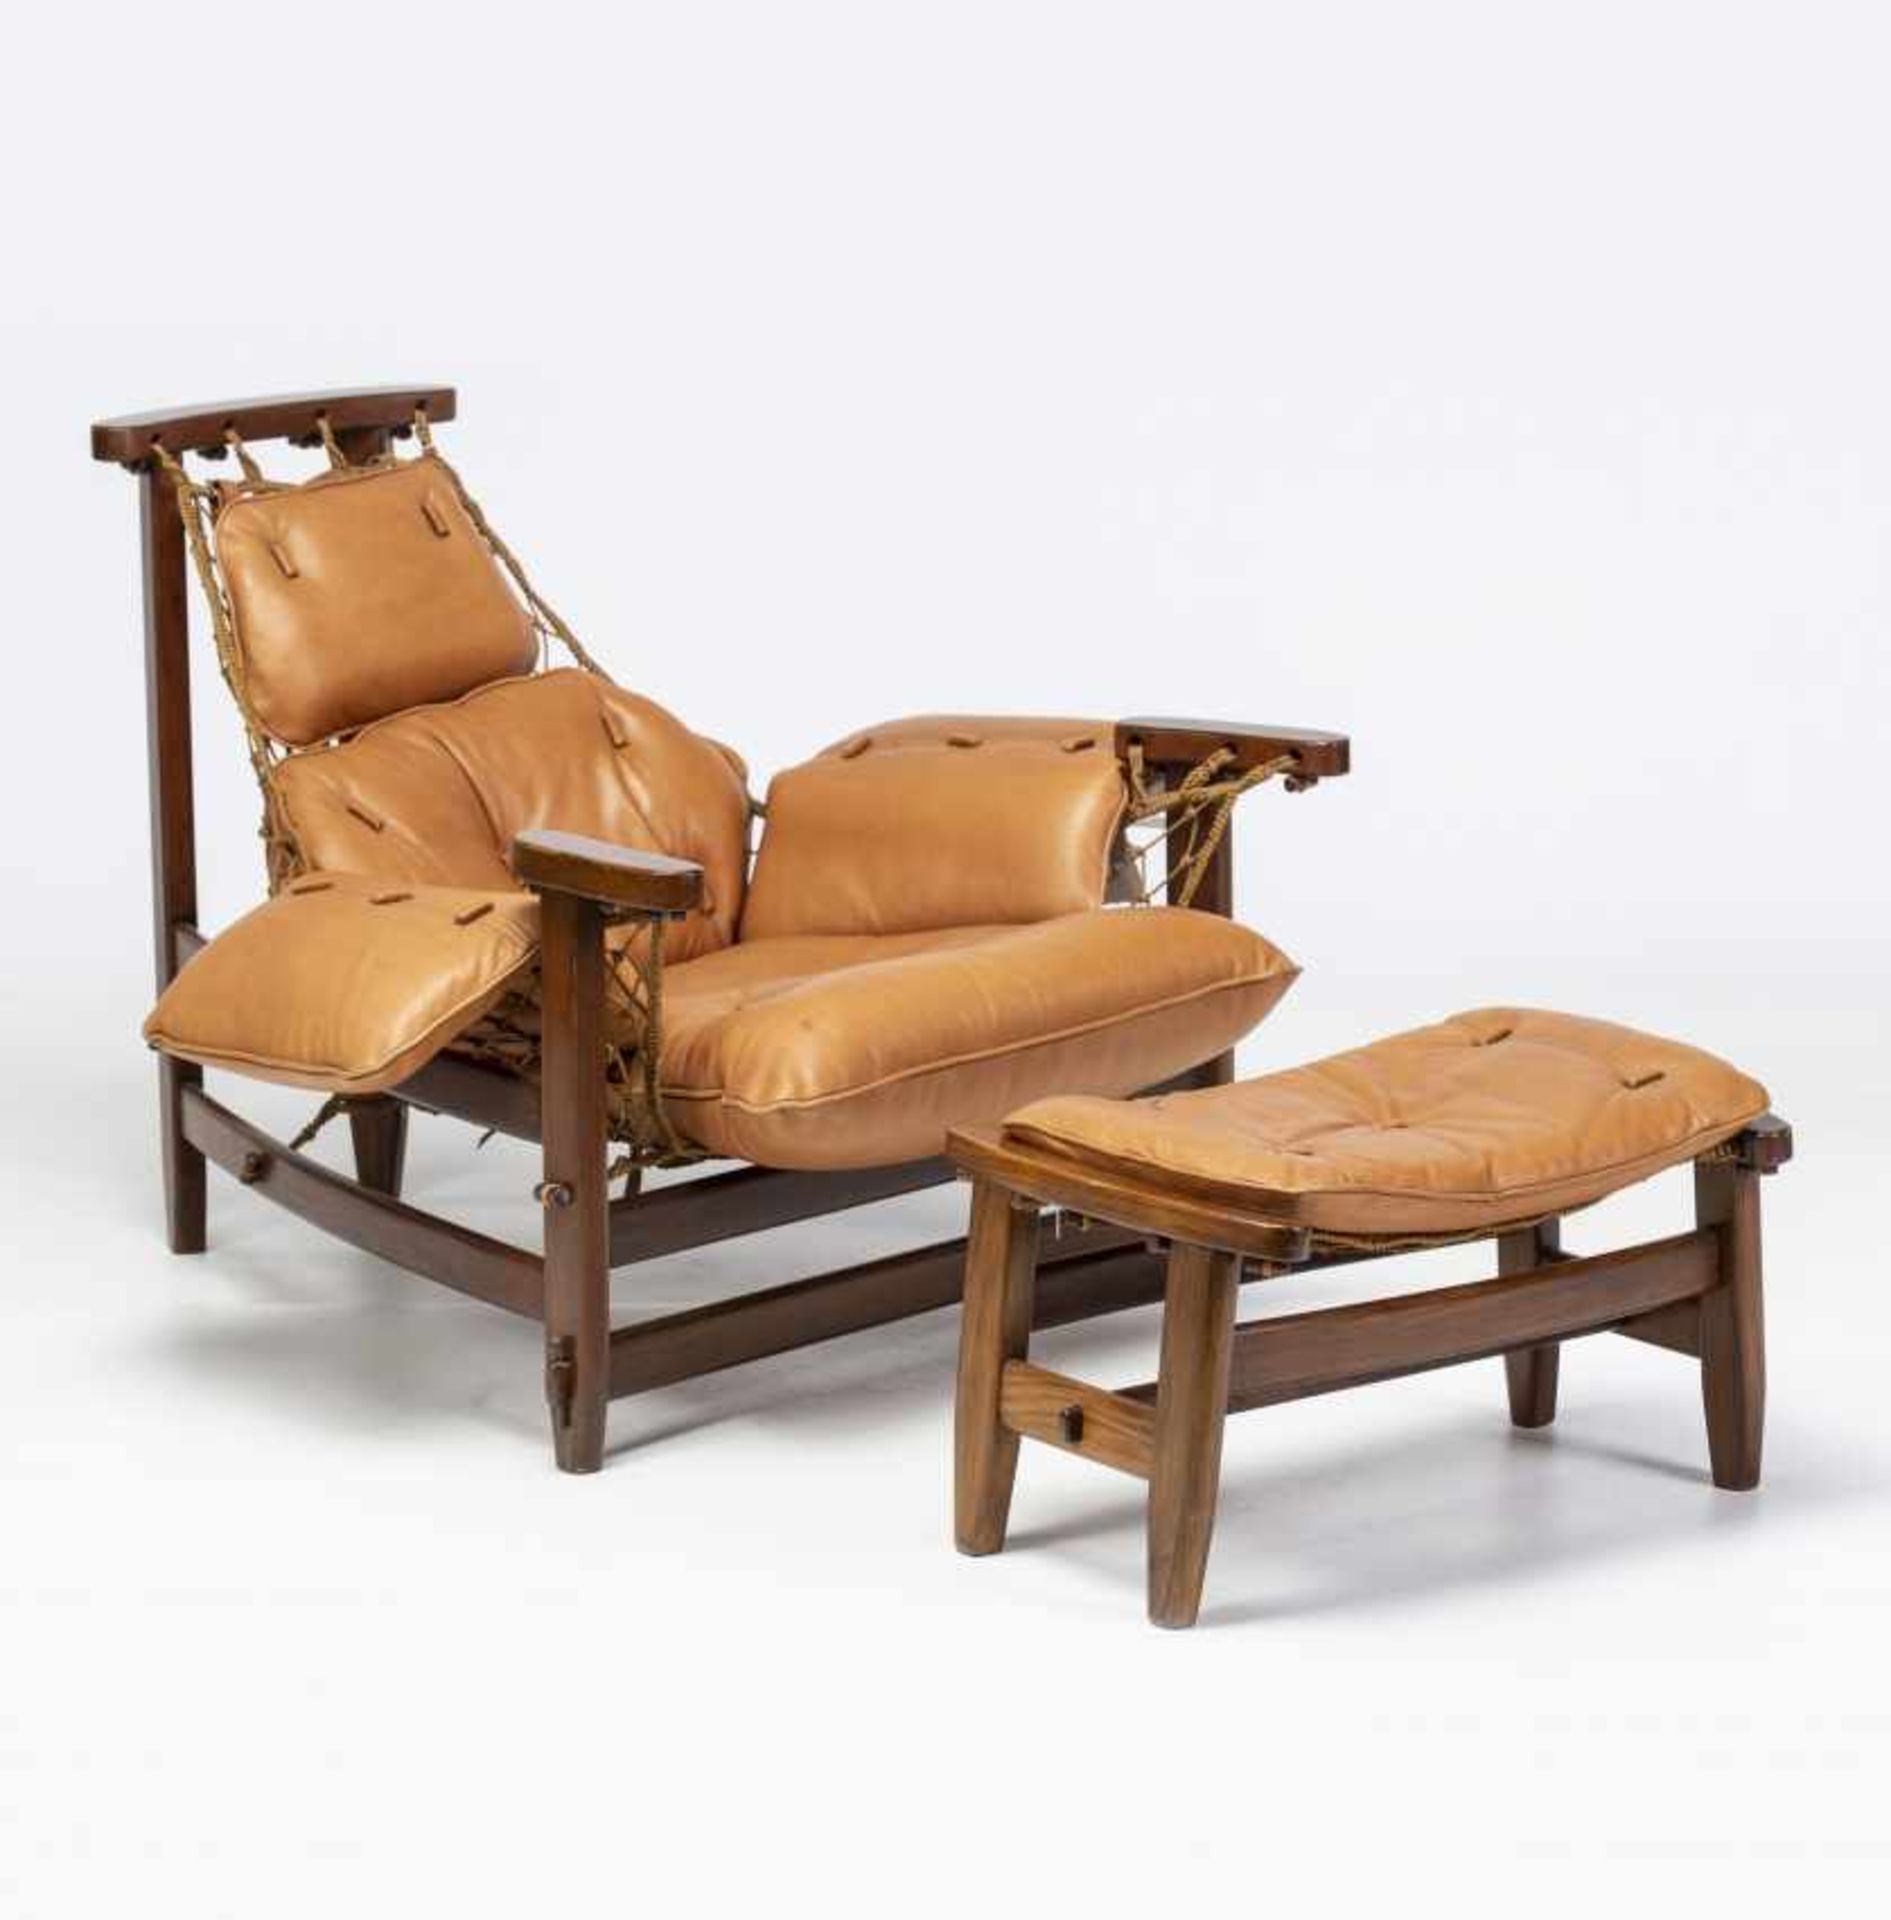 Jean Gillon, "Captain's" armchair with ottoman, Rosewood, sJean GillonIasi, 1919 - Sao Paulo, 2007" - Bild 2 aus 8